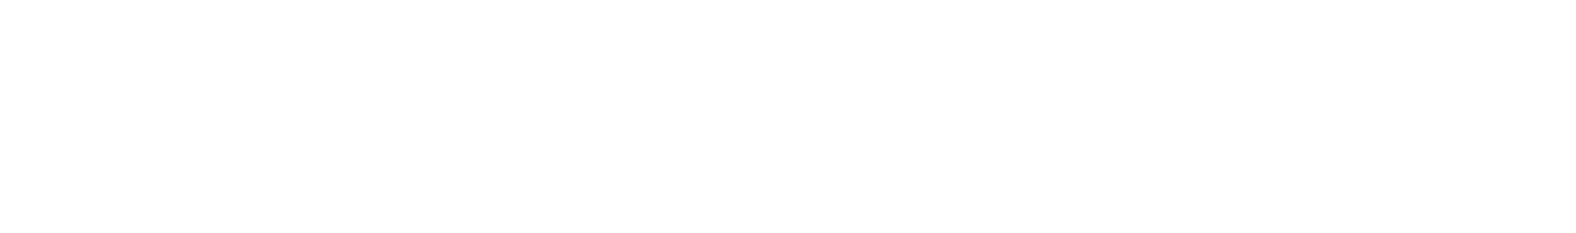 CarParts.com
 logo large for dark backgrounds (transparent PNG)